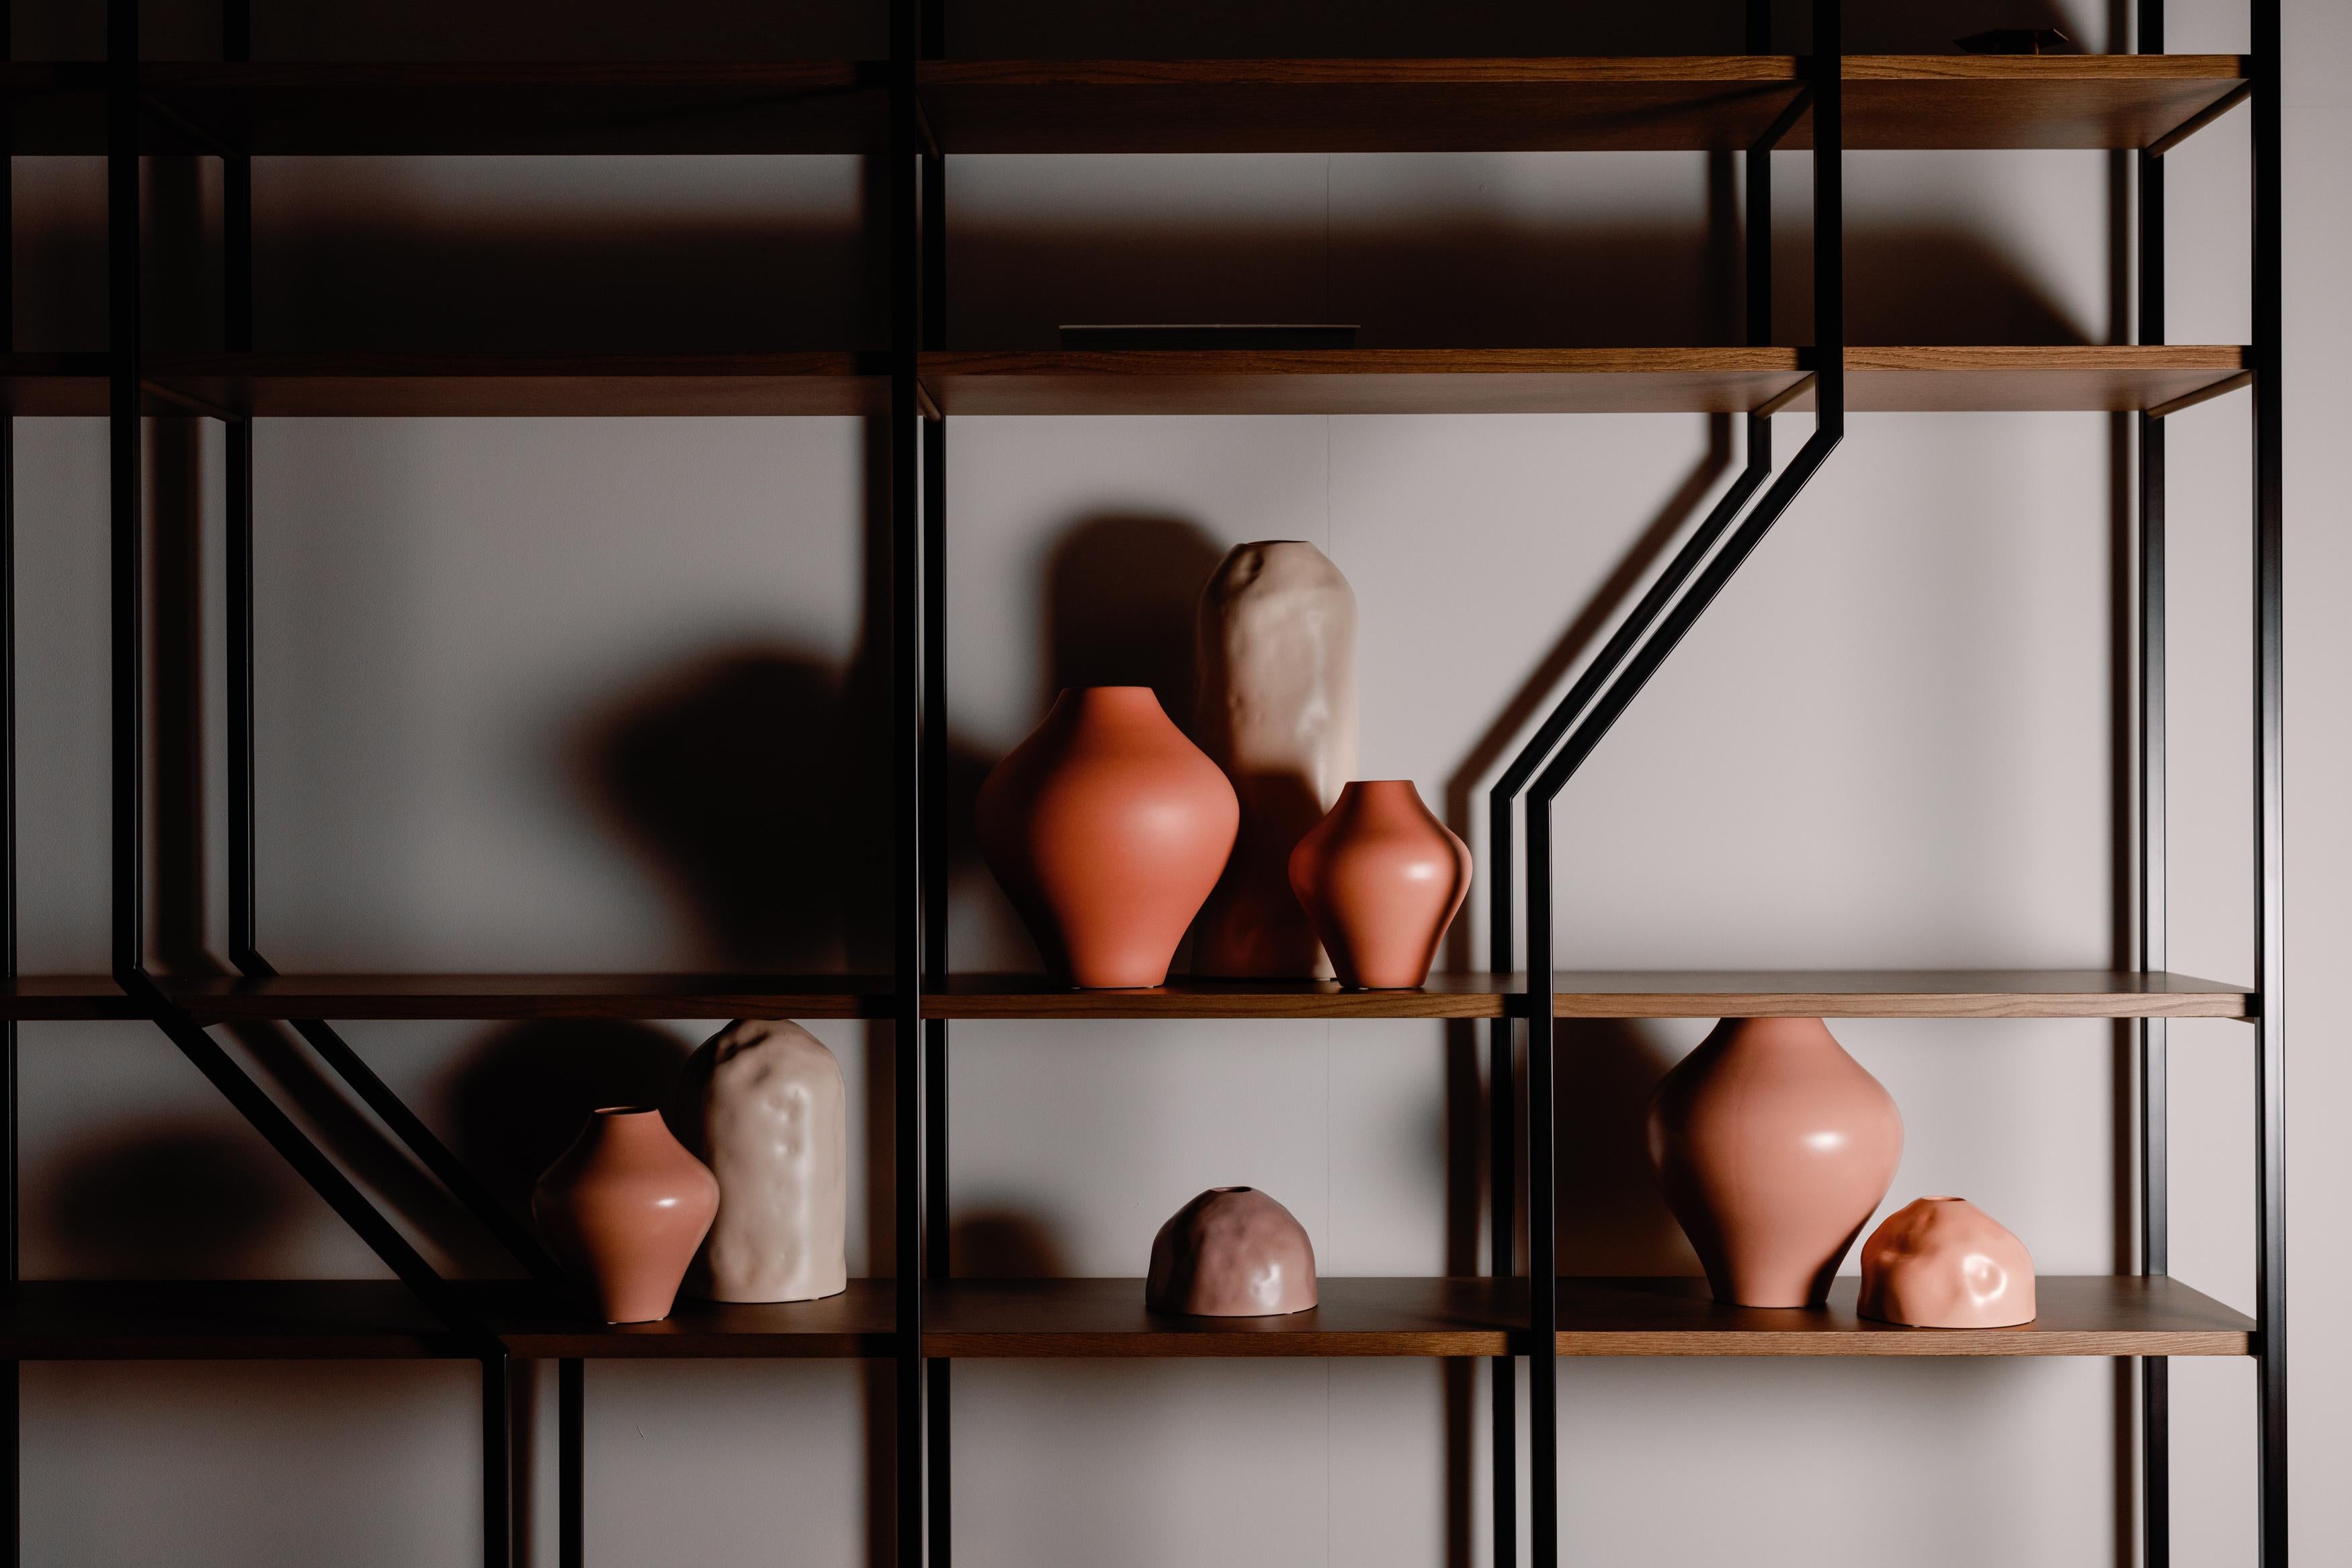 Ensemble de 8 pots en céramique, Collection Lusitanus Home, fabriqués à la main au Portugal - Europe par Lusitanus Home.

Ce magnifique ensemble comprend huit vases en céramique imperméable, parfaits pour être exposés ensemble dans des combinaisons